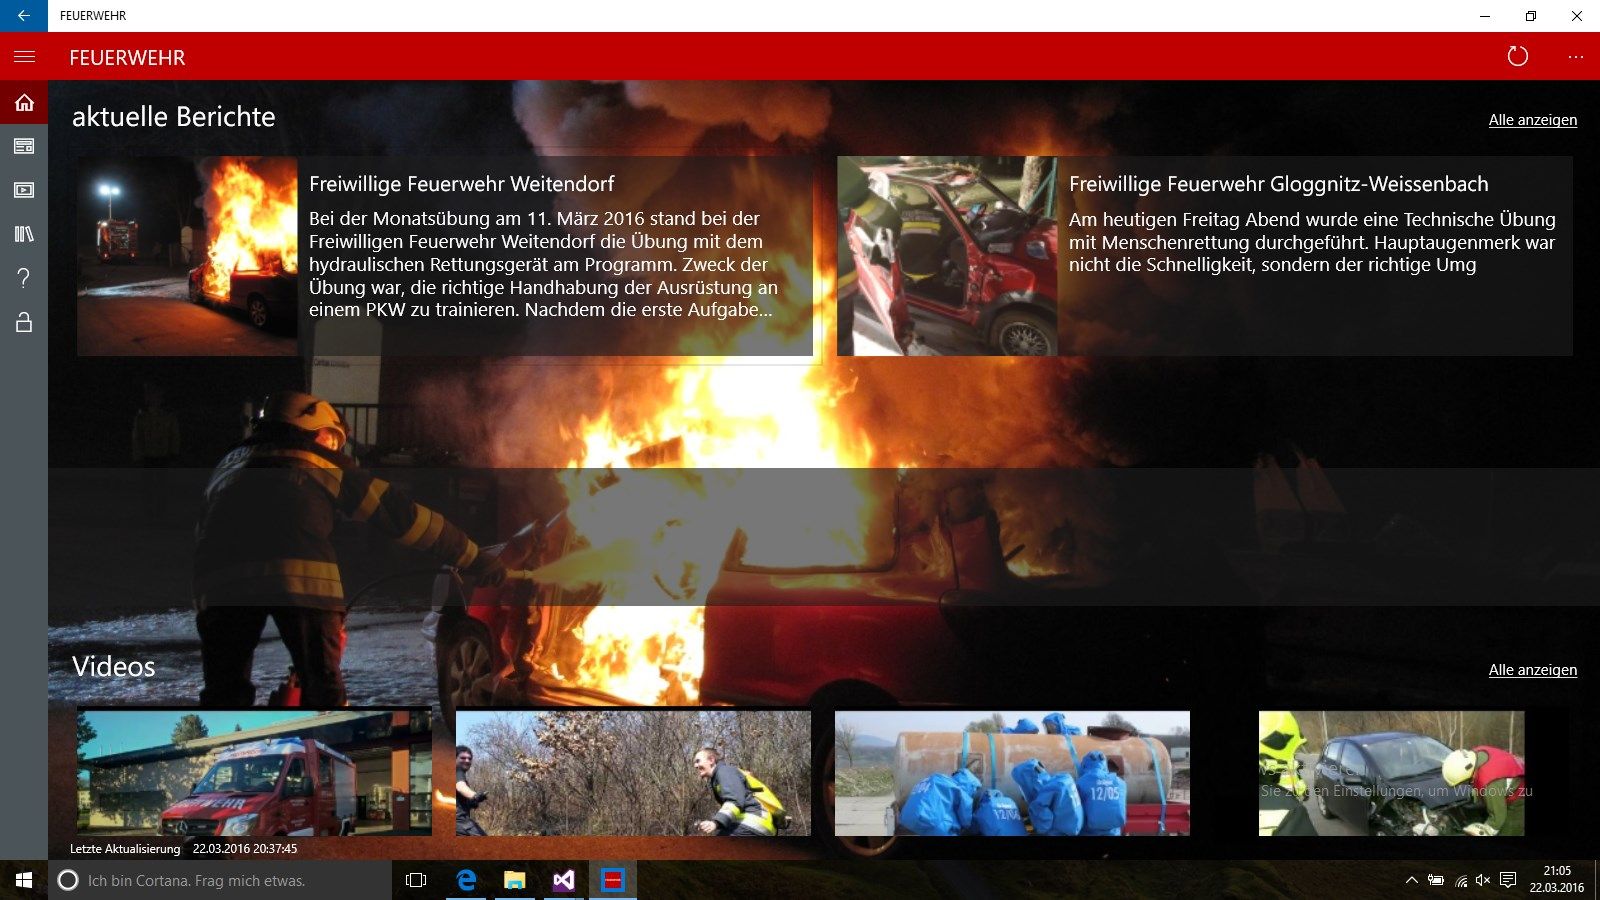 Hauptseite der App, zeigt eine Übersicht der aktuellsten Meldungen und Videos.